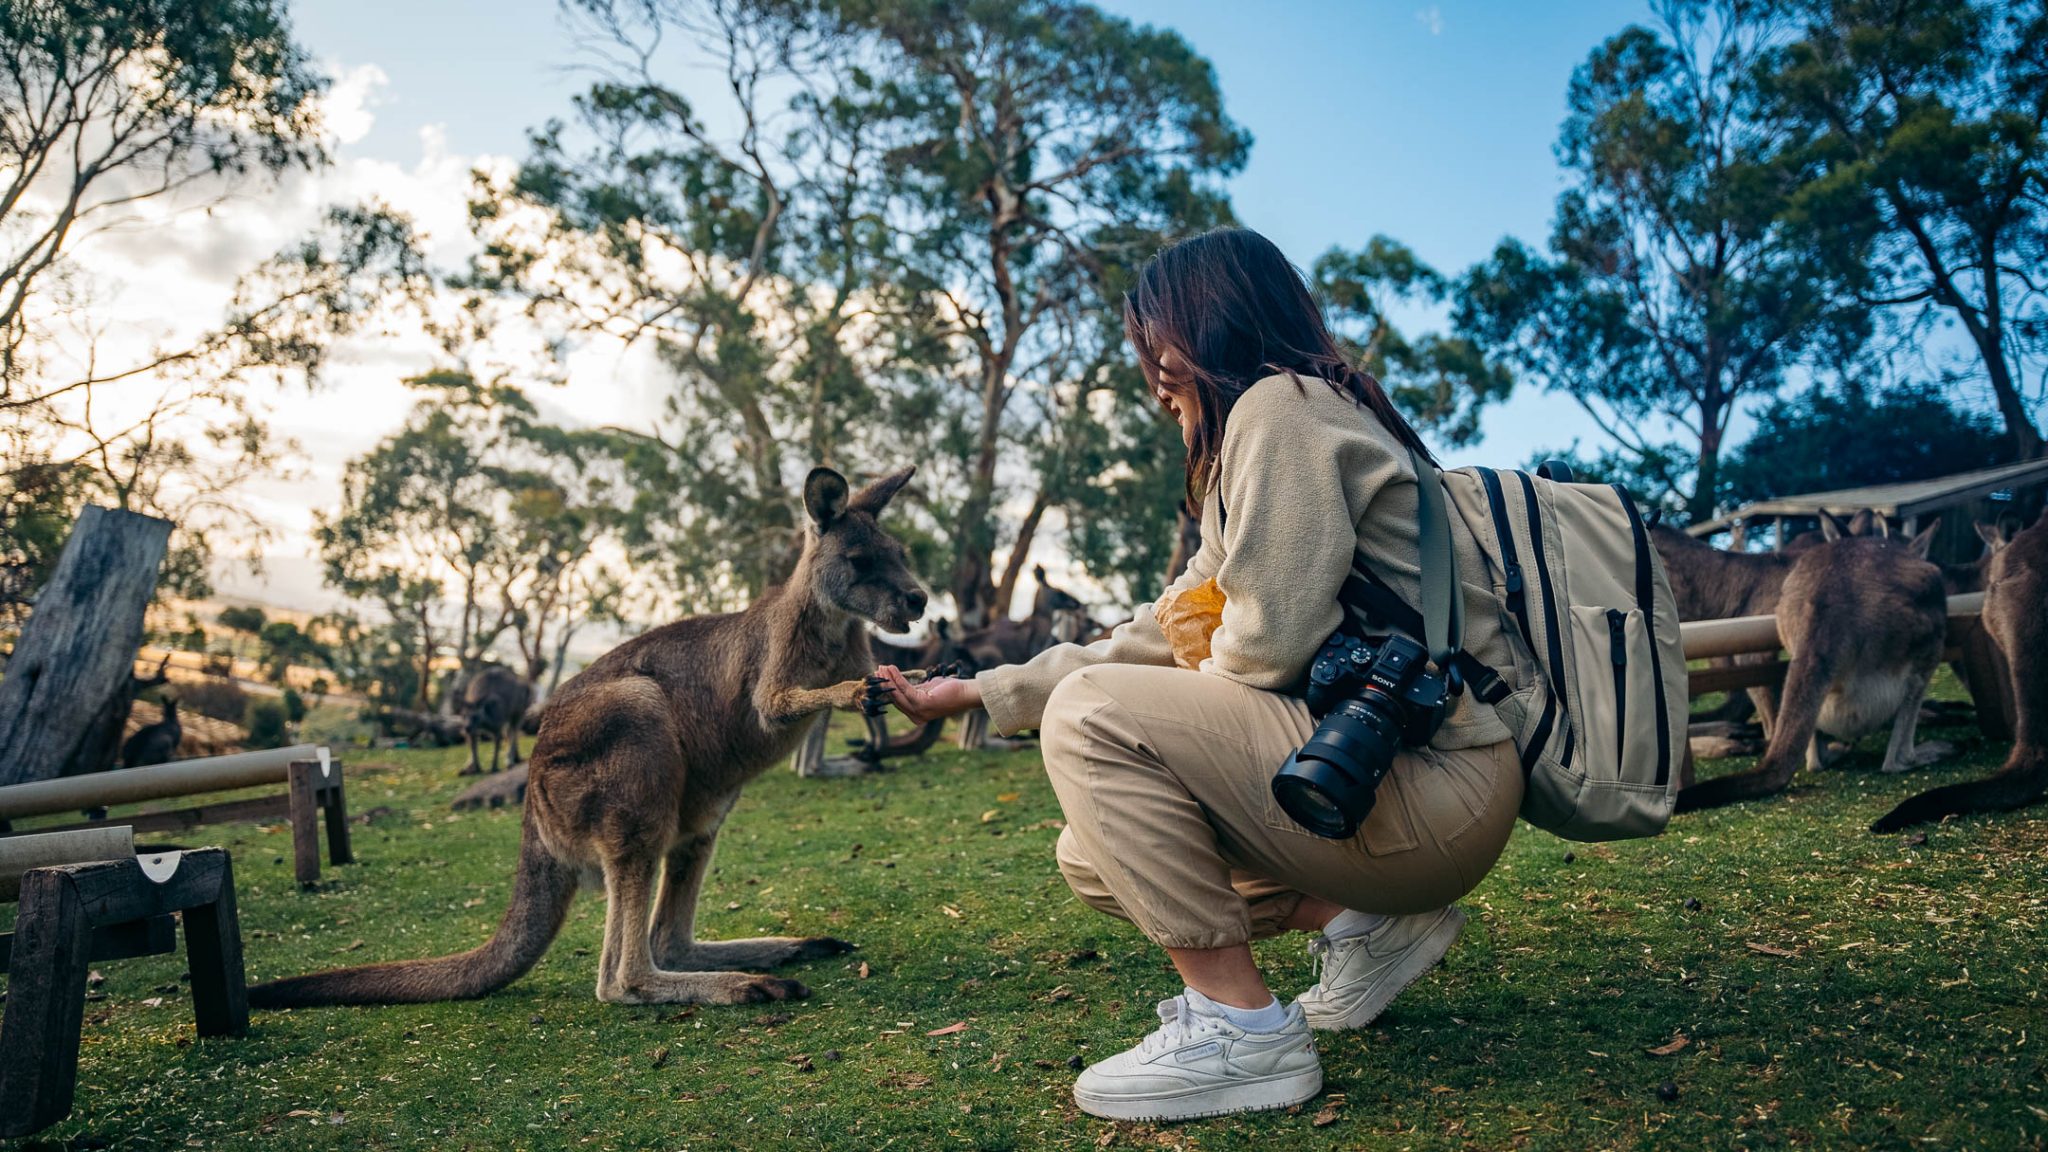 Feeding a Kangaroo at Bonorong